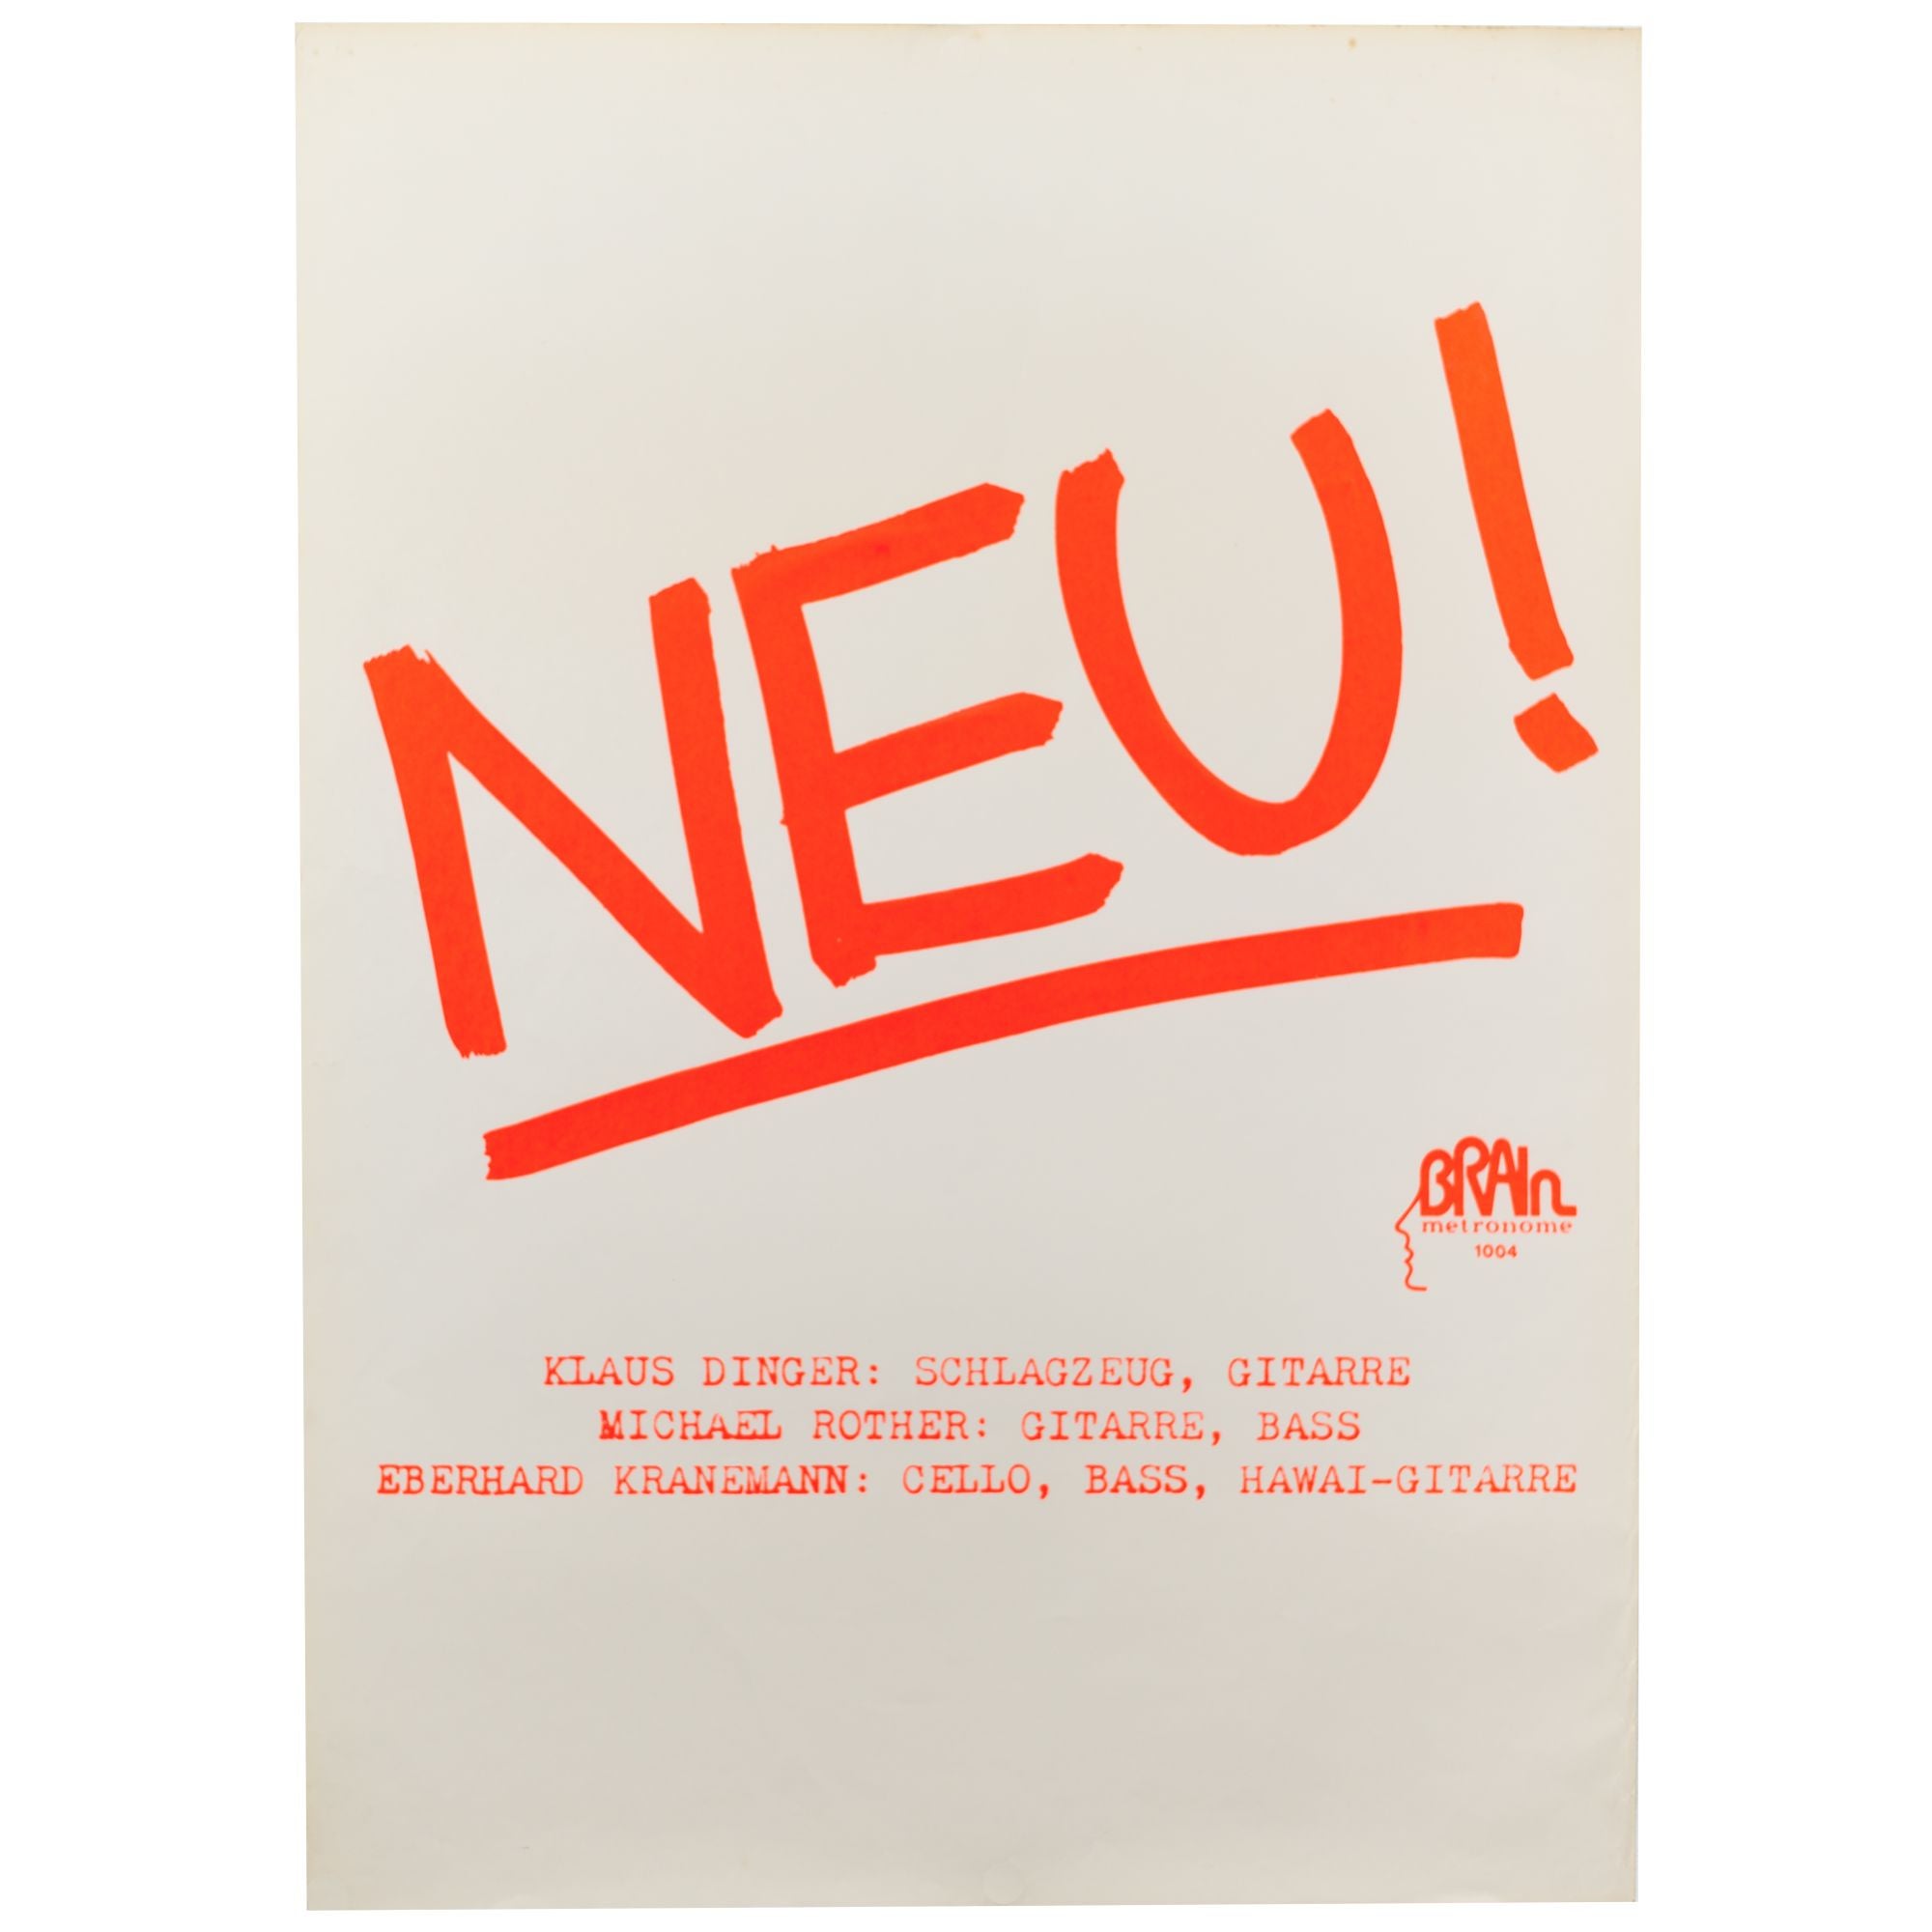 NEU! Poster for the first NEU! LP | Klaus Dinger